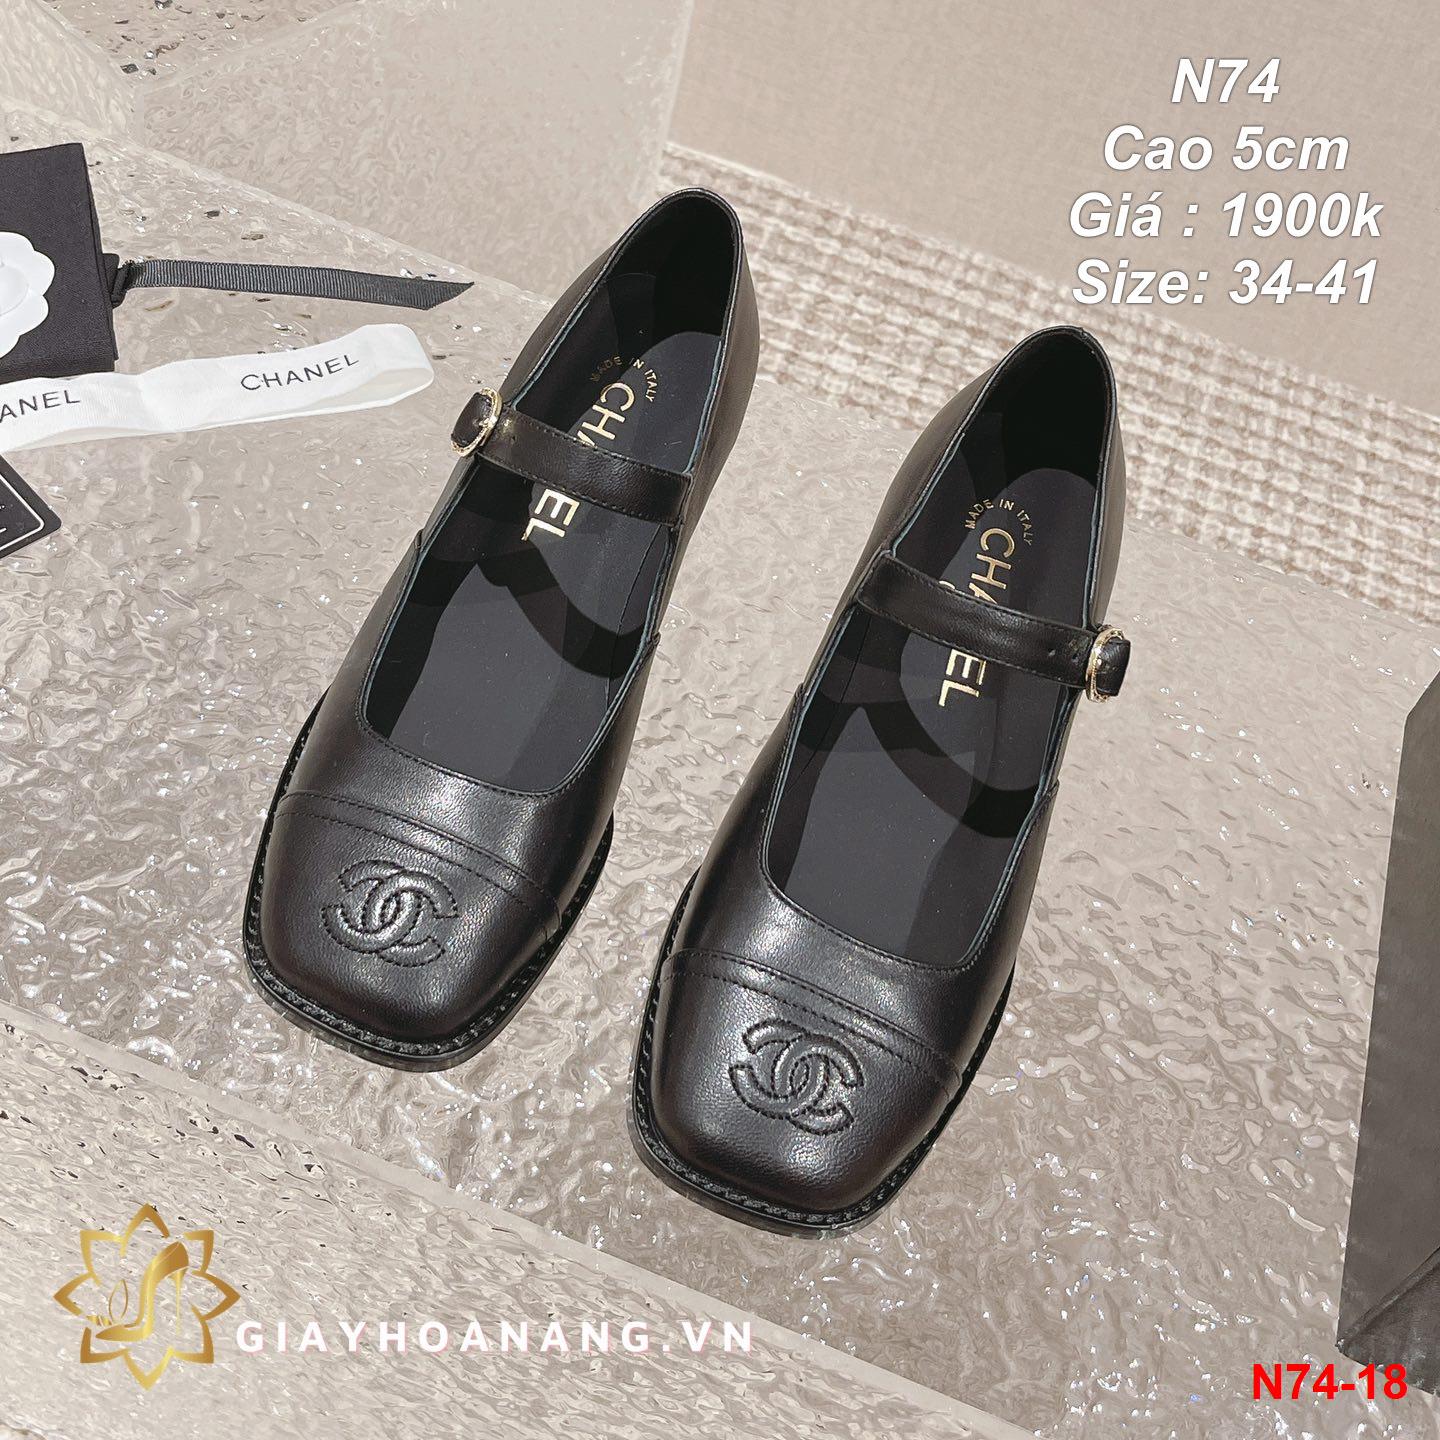 N74-18 Chanel giày cao 5cm siêu cấp